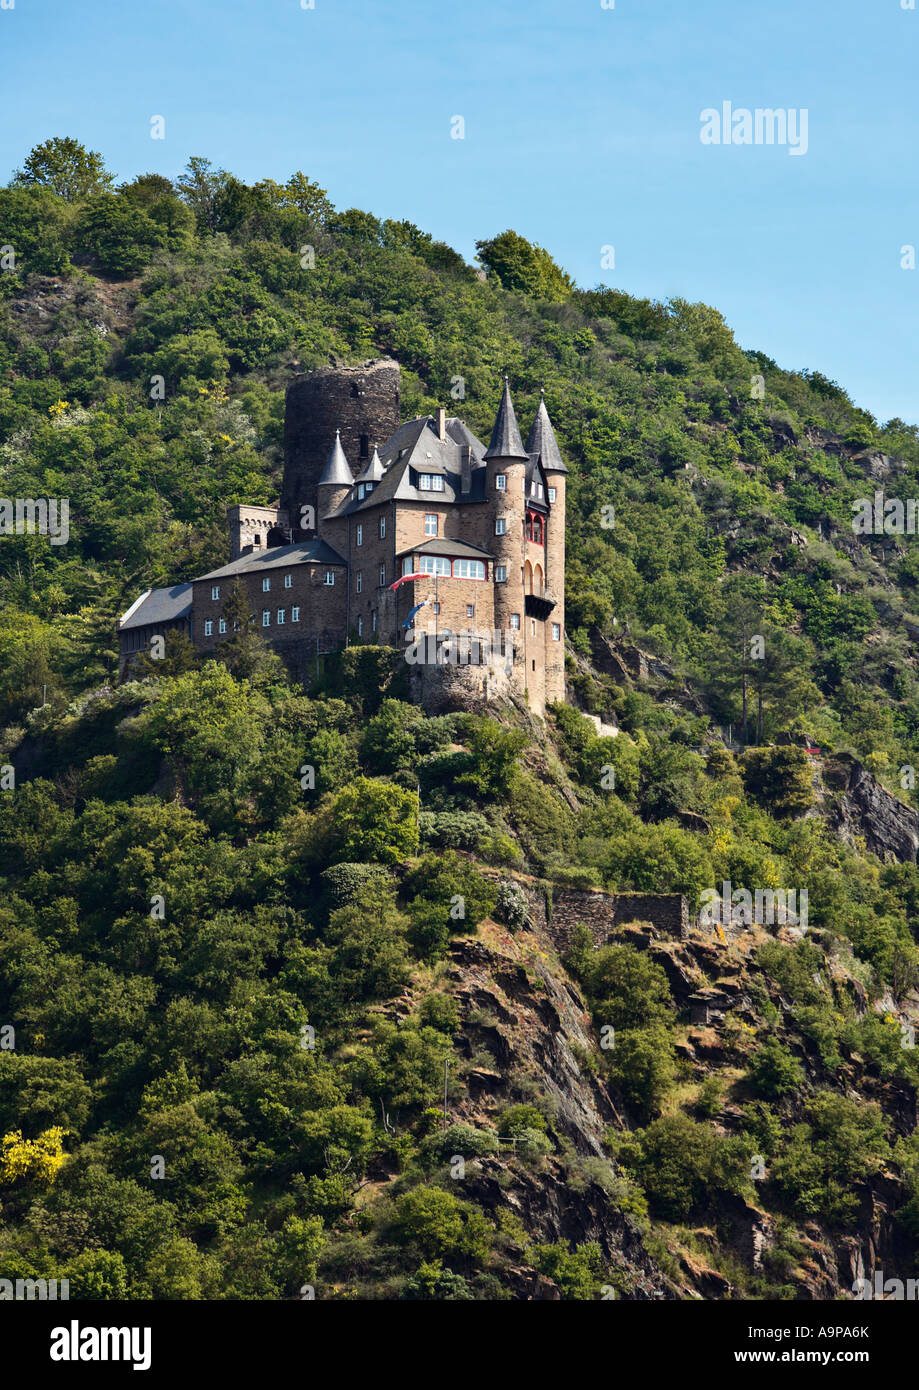 Castle Katz, Rhineland, Germany, Europe Stock Photo